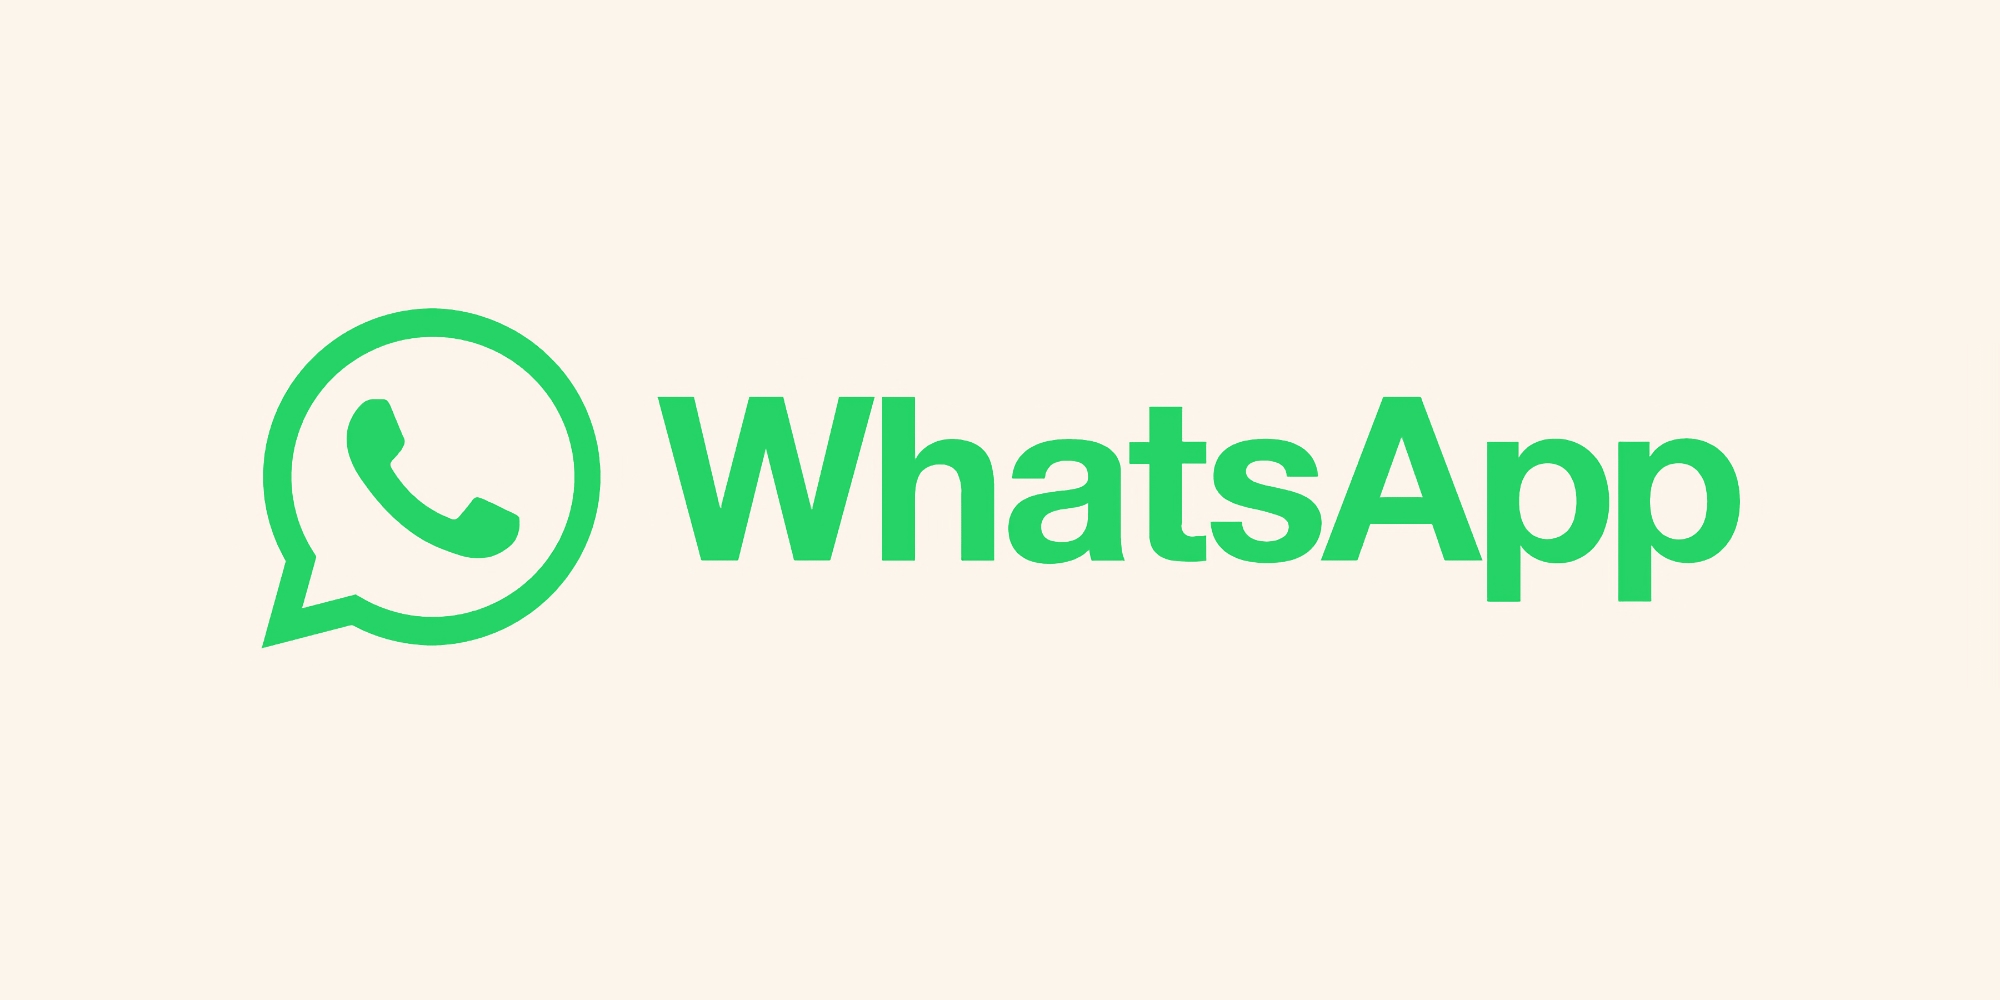 WhatsApp för iPhone har nu möjlighet att skicka foton och videor i sin ursprungliga kvalitet